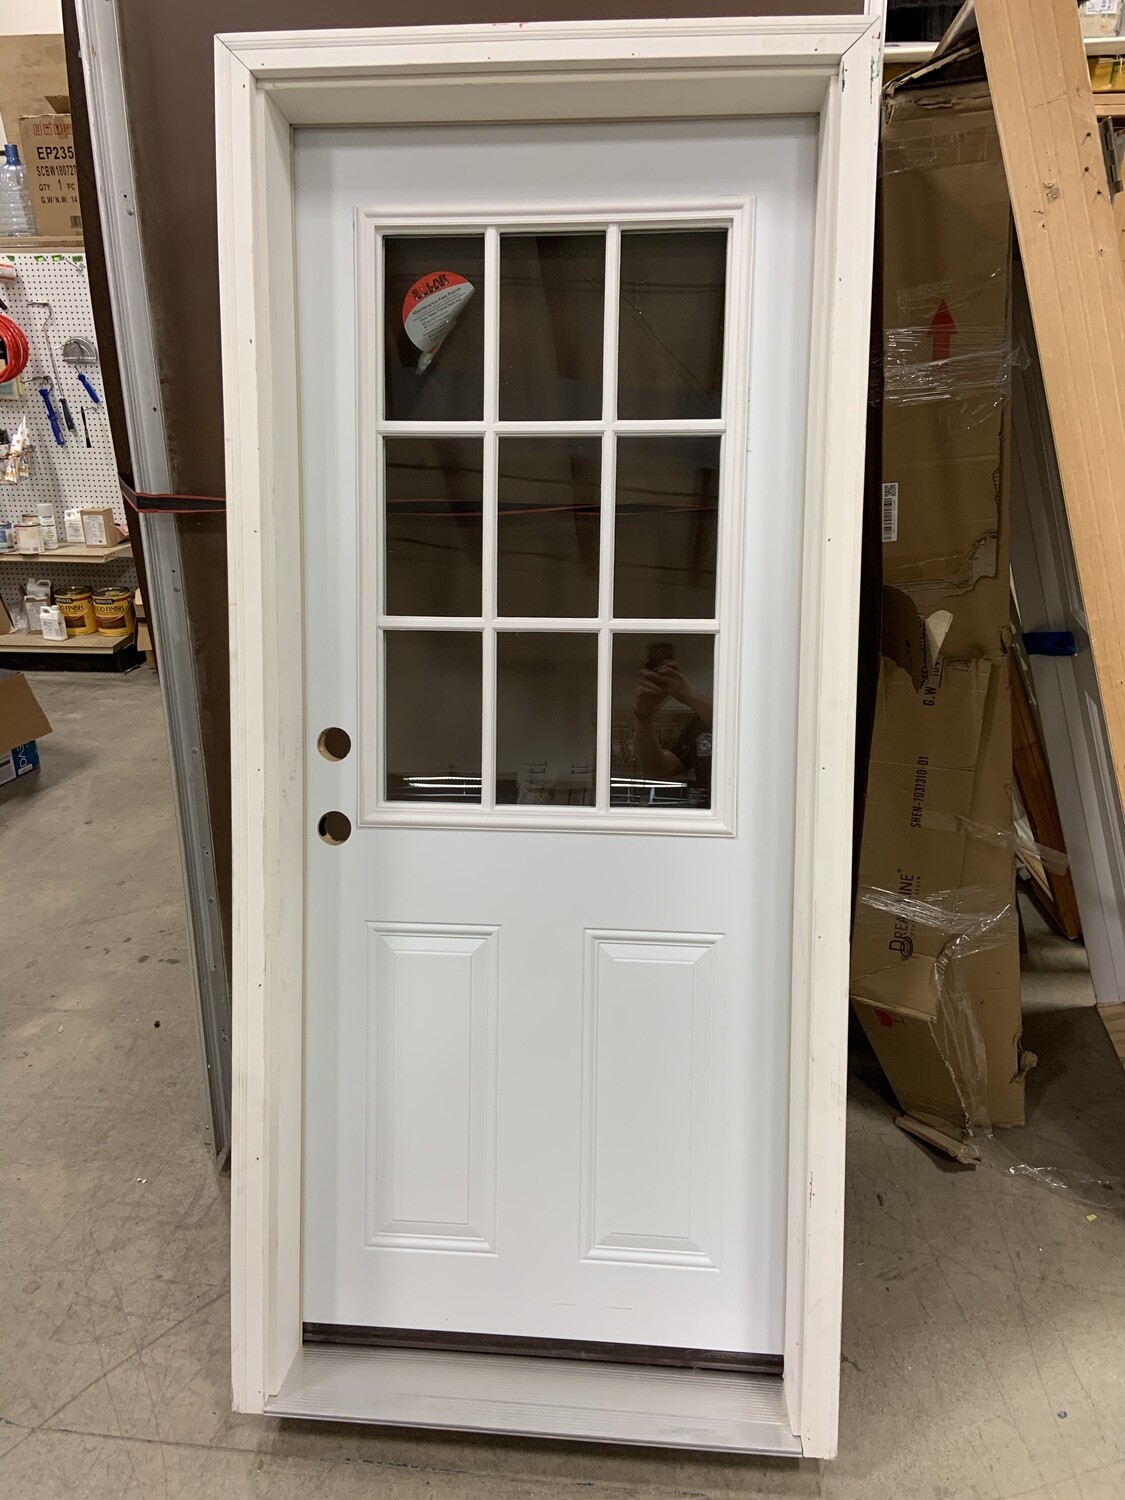 BRAND NEW EXTERIOR DOOR WITH JAM 32” x 76”